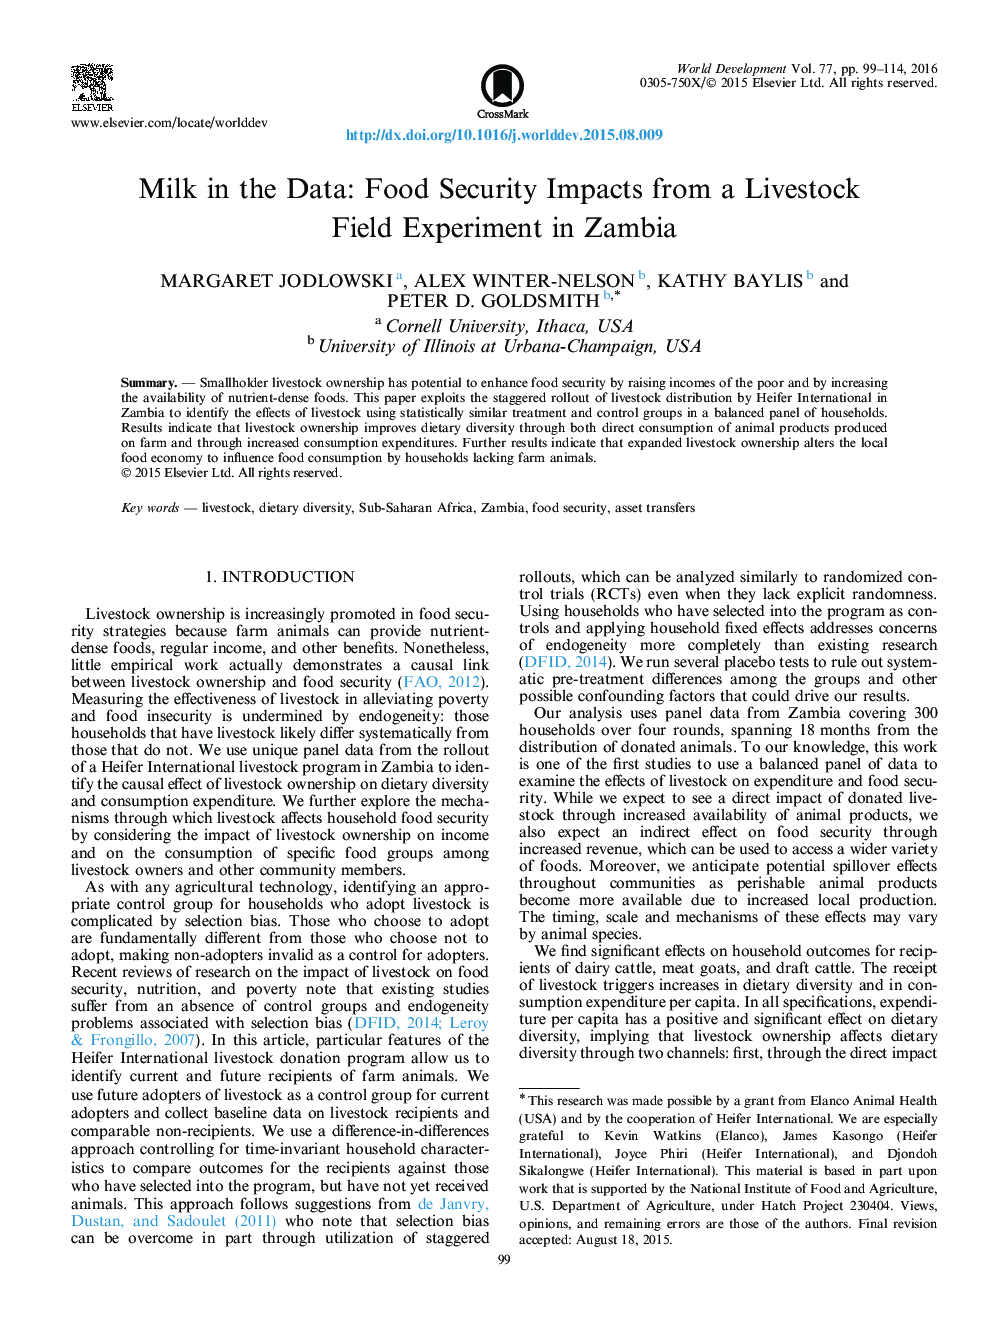 شیر در داده ها: اثرات امنیت غذایی از آزمایش دام های دام در زامبیا 